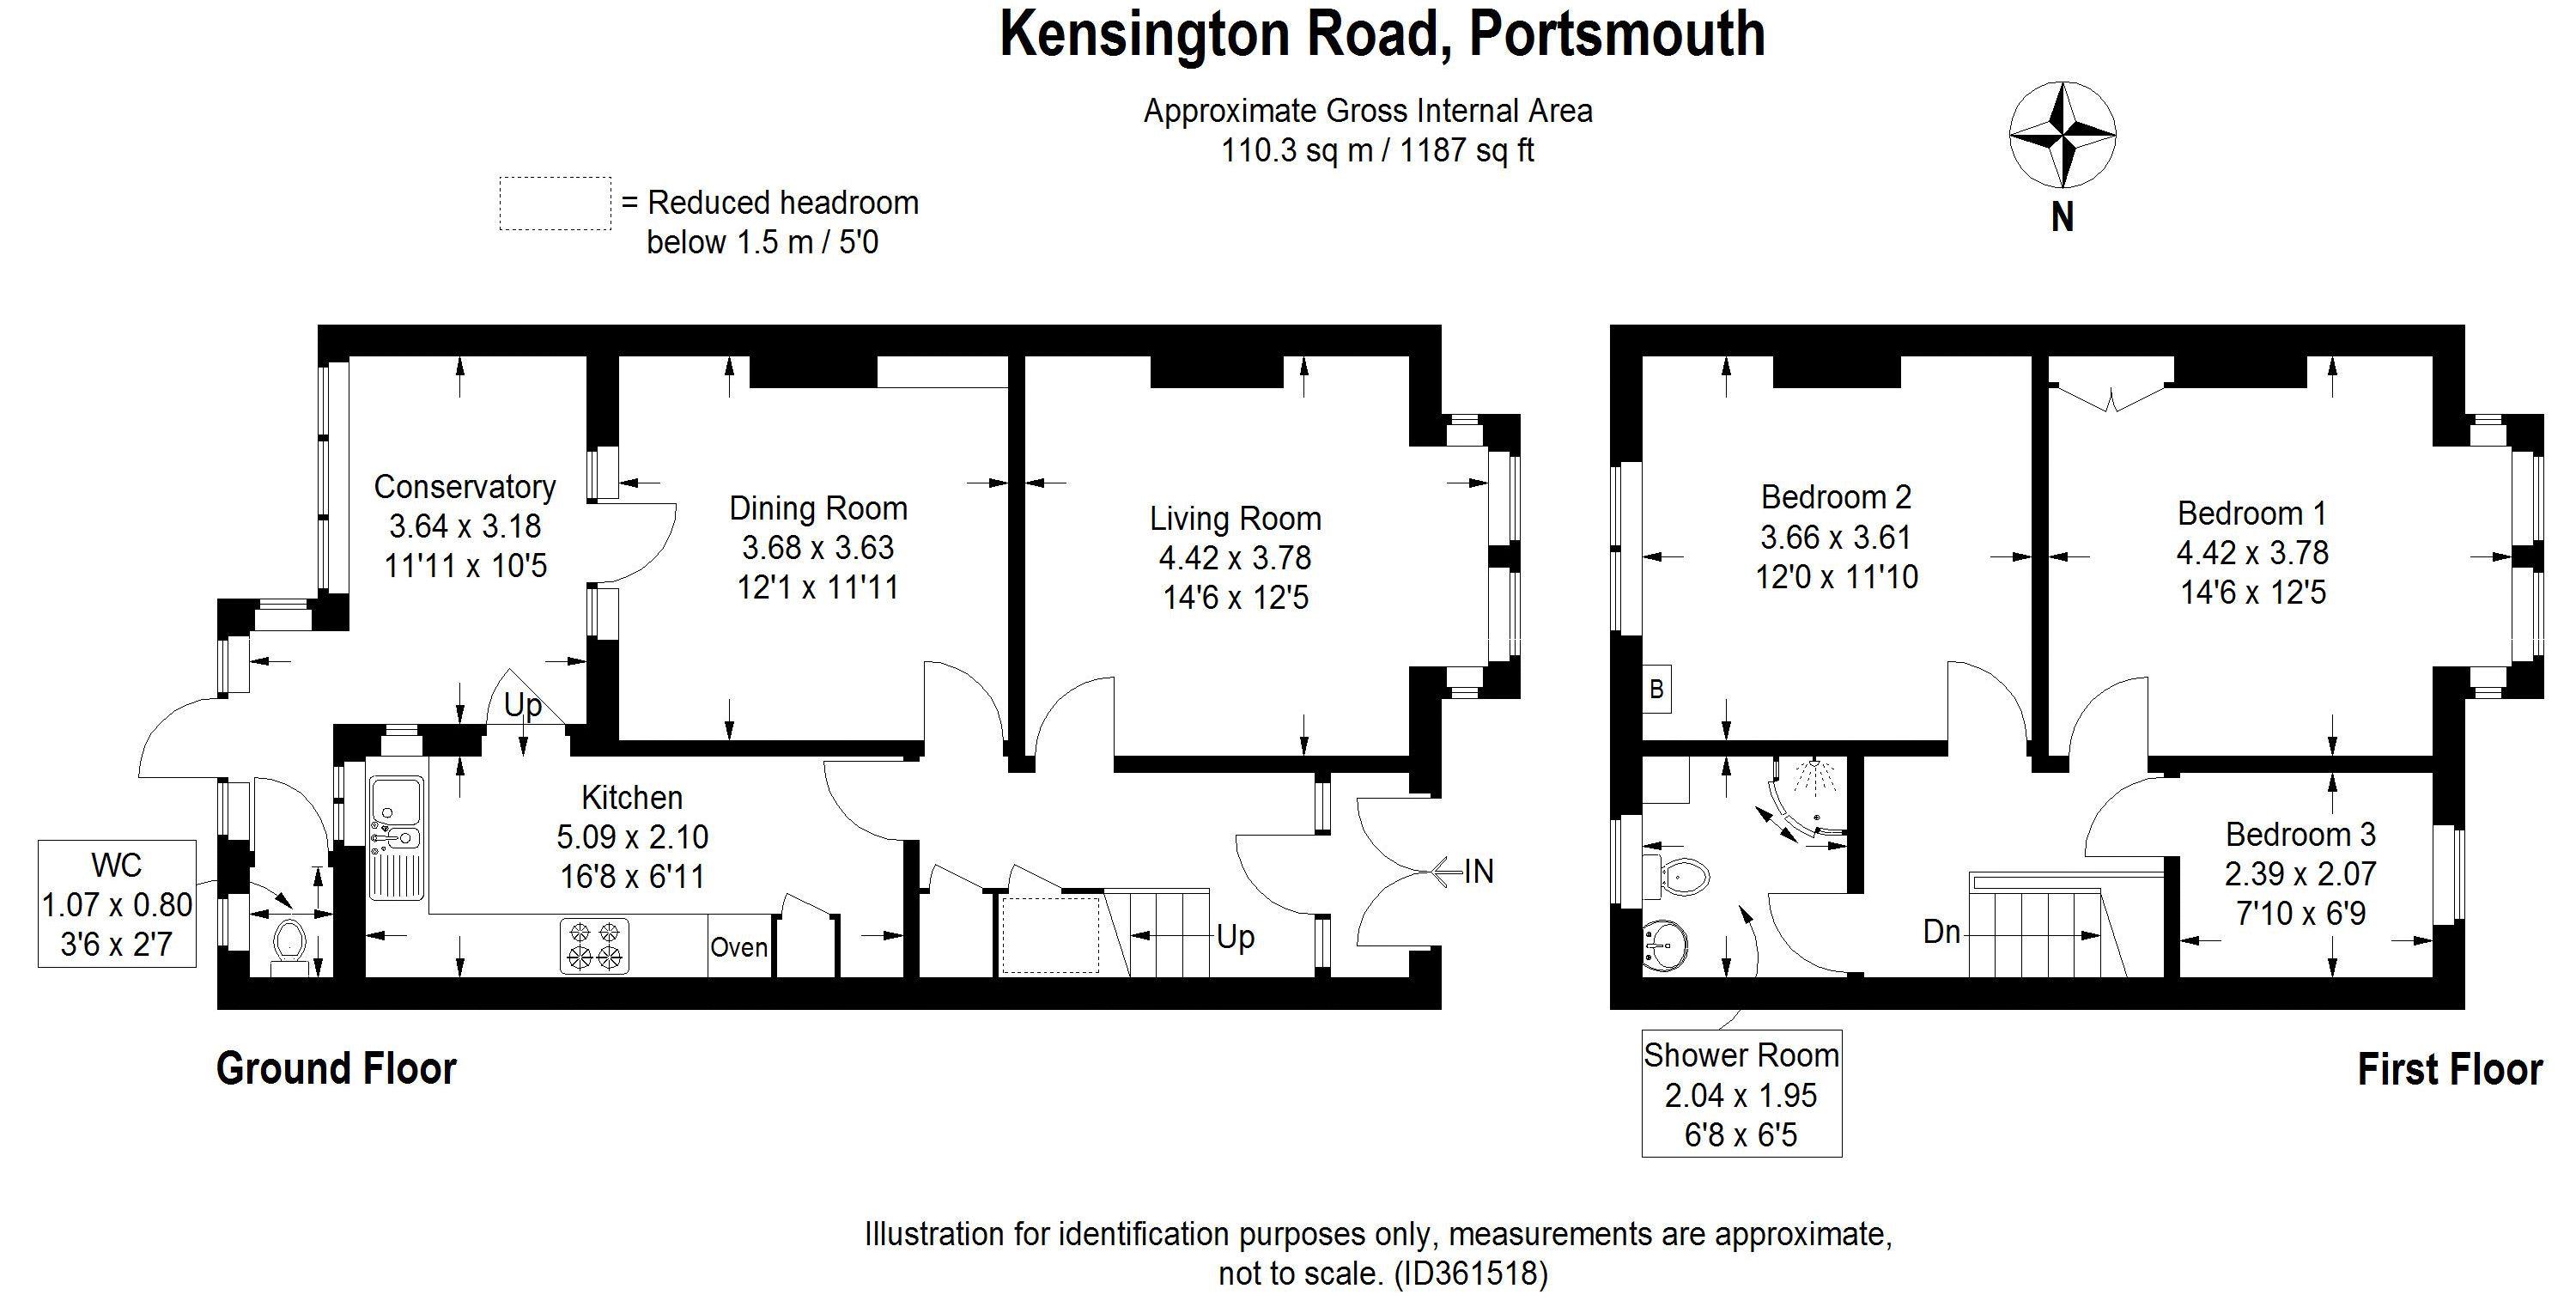 Kensington Road